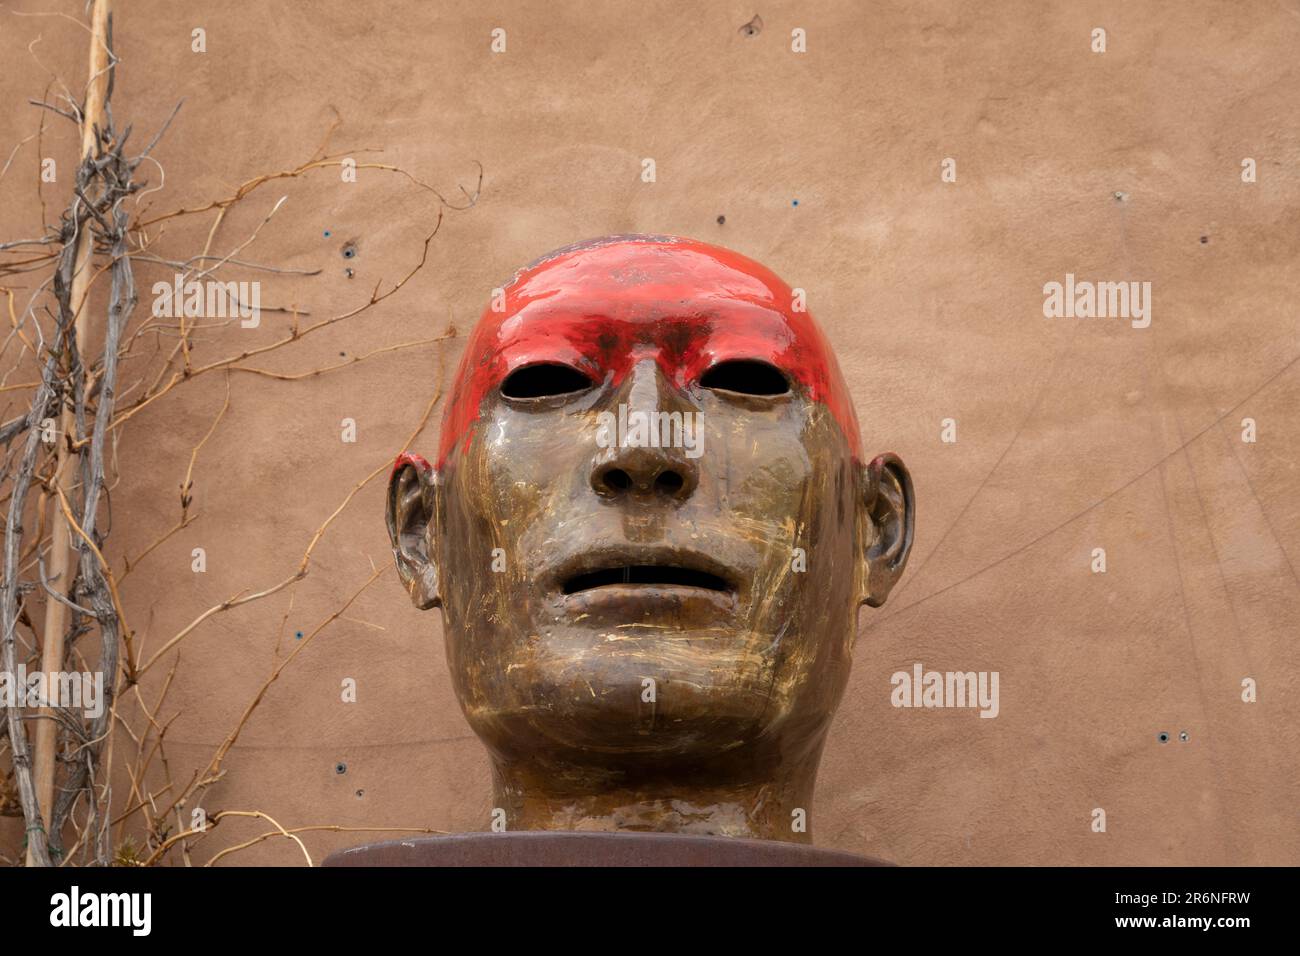 Una escultura moderna de una cabeza humana domina la fachada de adobe de la galería de arte Sun & Dust a lo largo de la histórica Canyon Road en Santa Fe, Nuevo México. Foto de stock